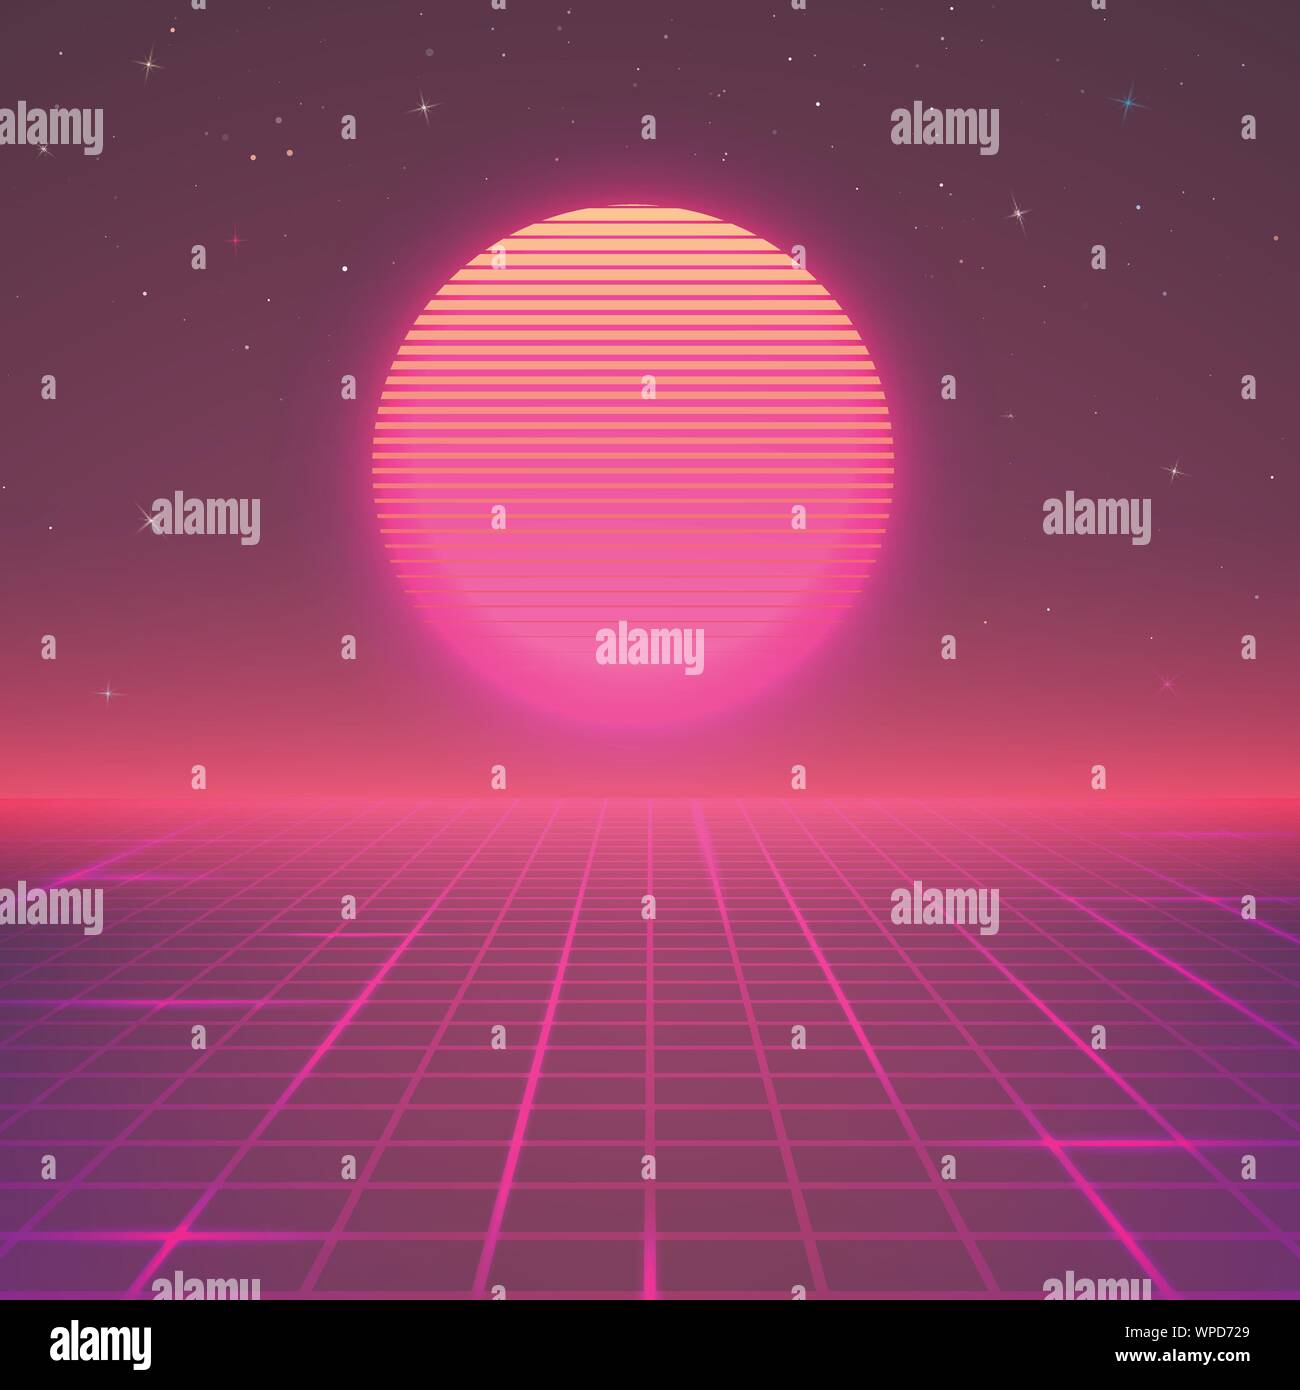 Im Stil der 80er. Sci-fi oder retro Musik Poster wallpaper. Vector Illustration Stock Vektor